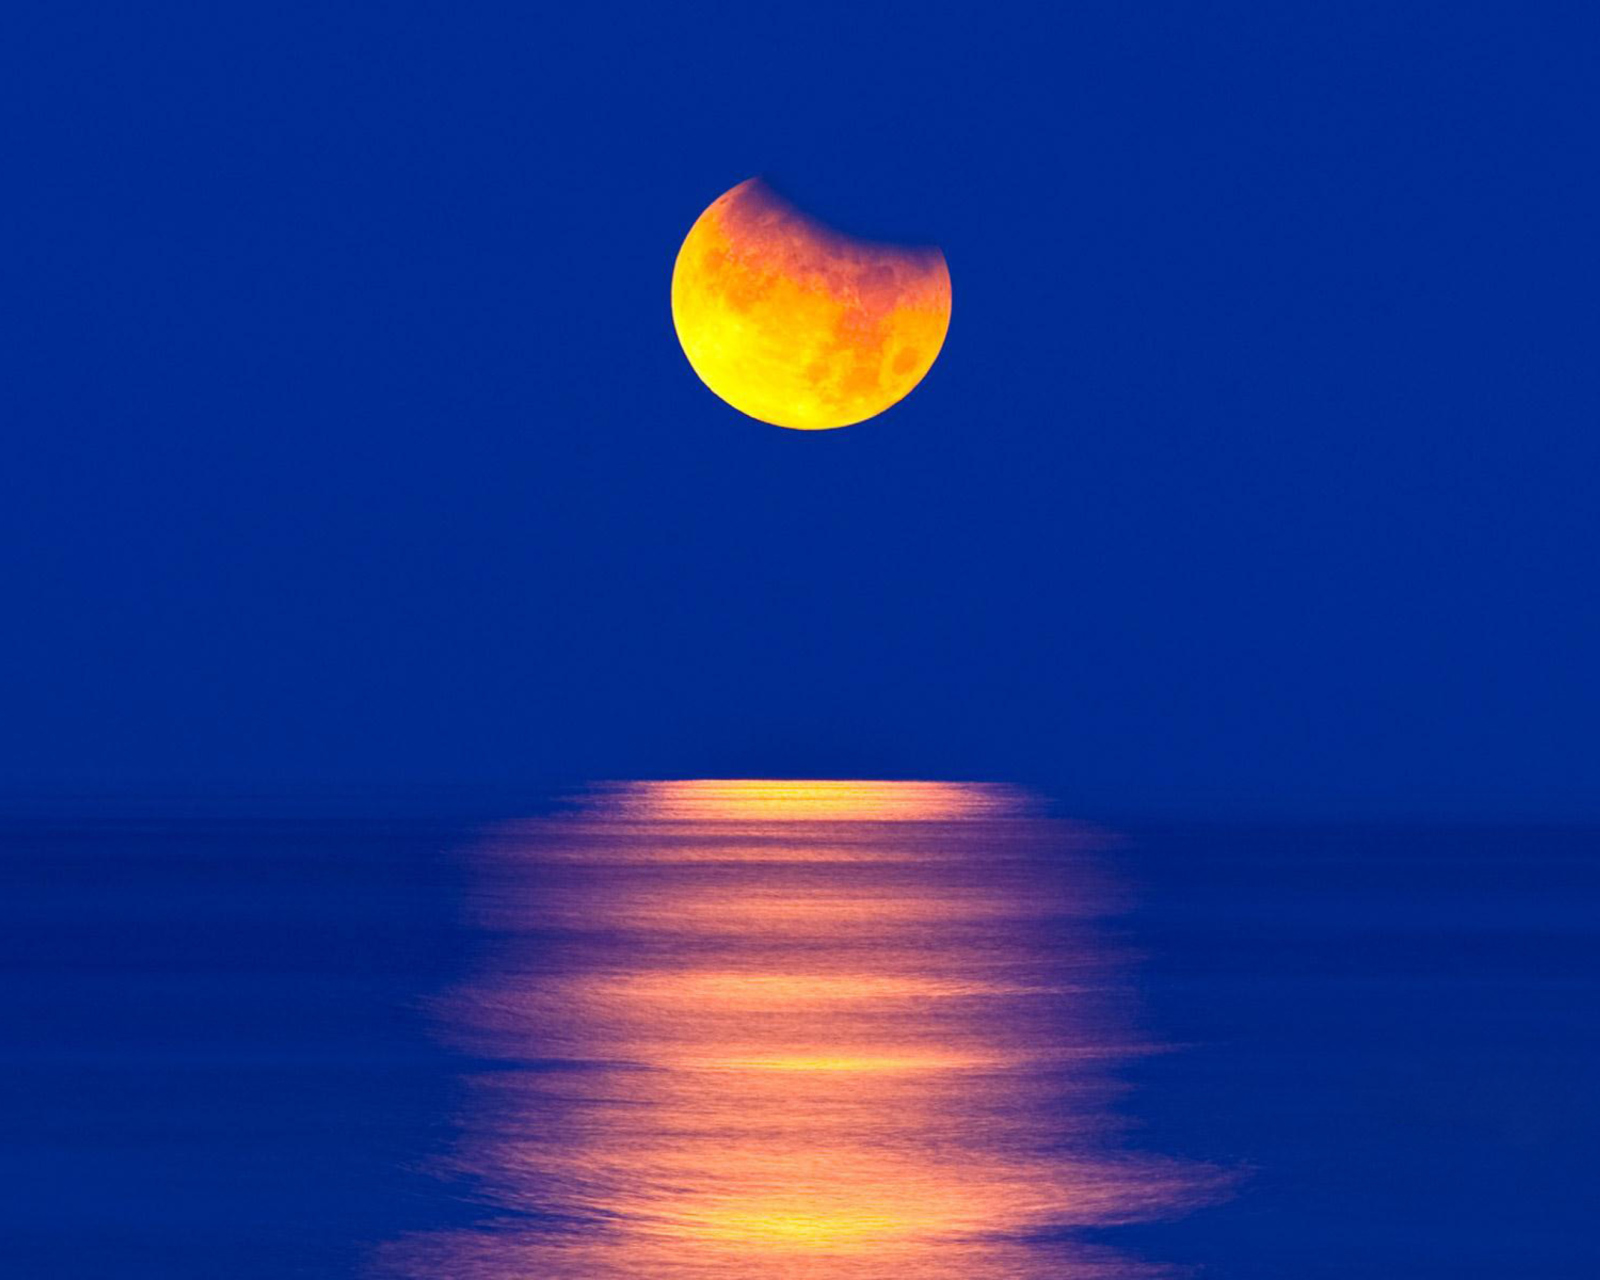 Обои Orange Moon In Blue Sky 1600x1280